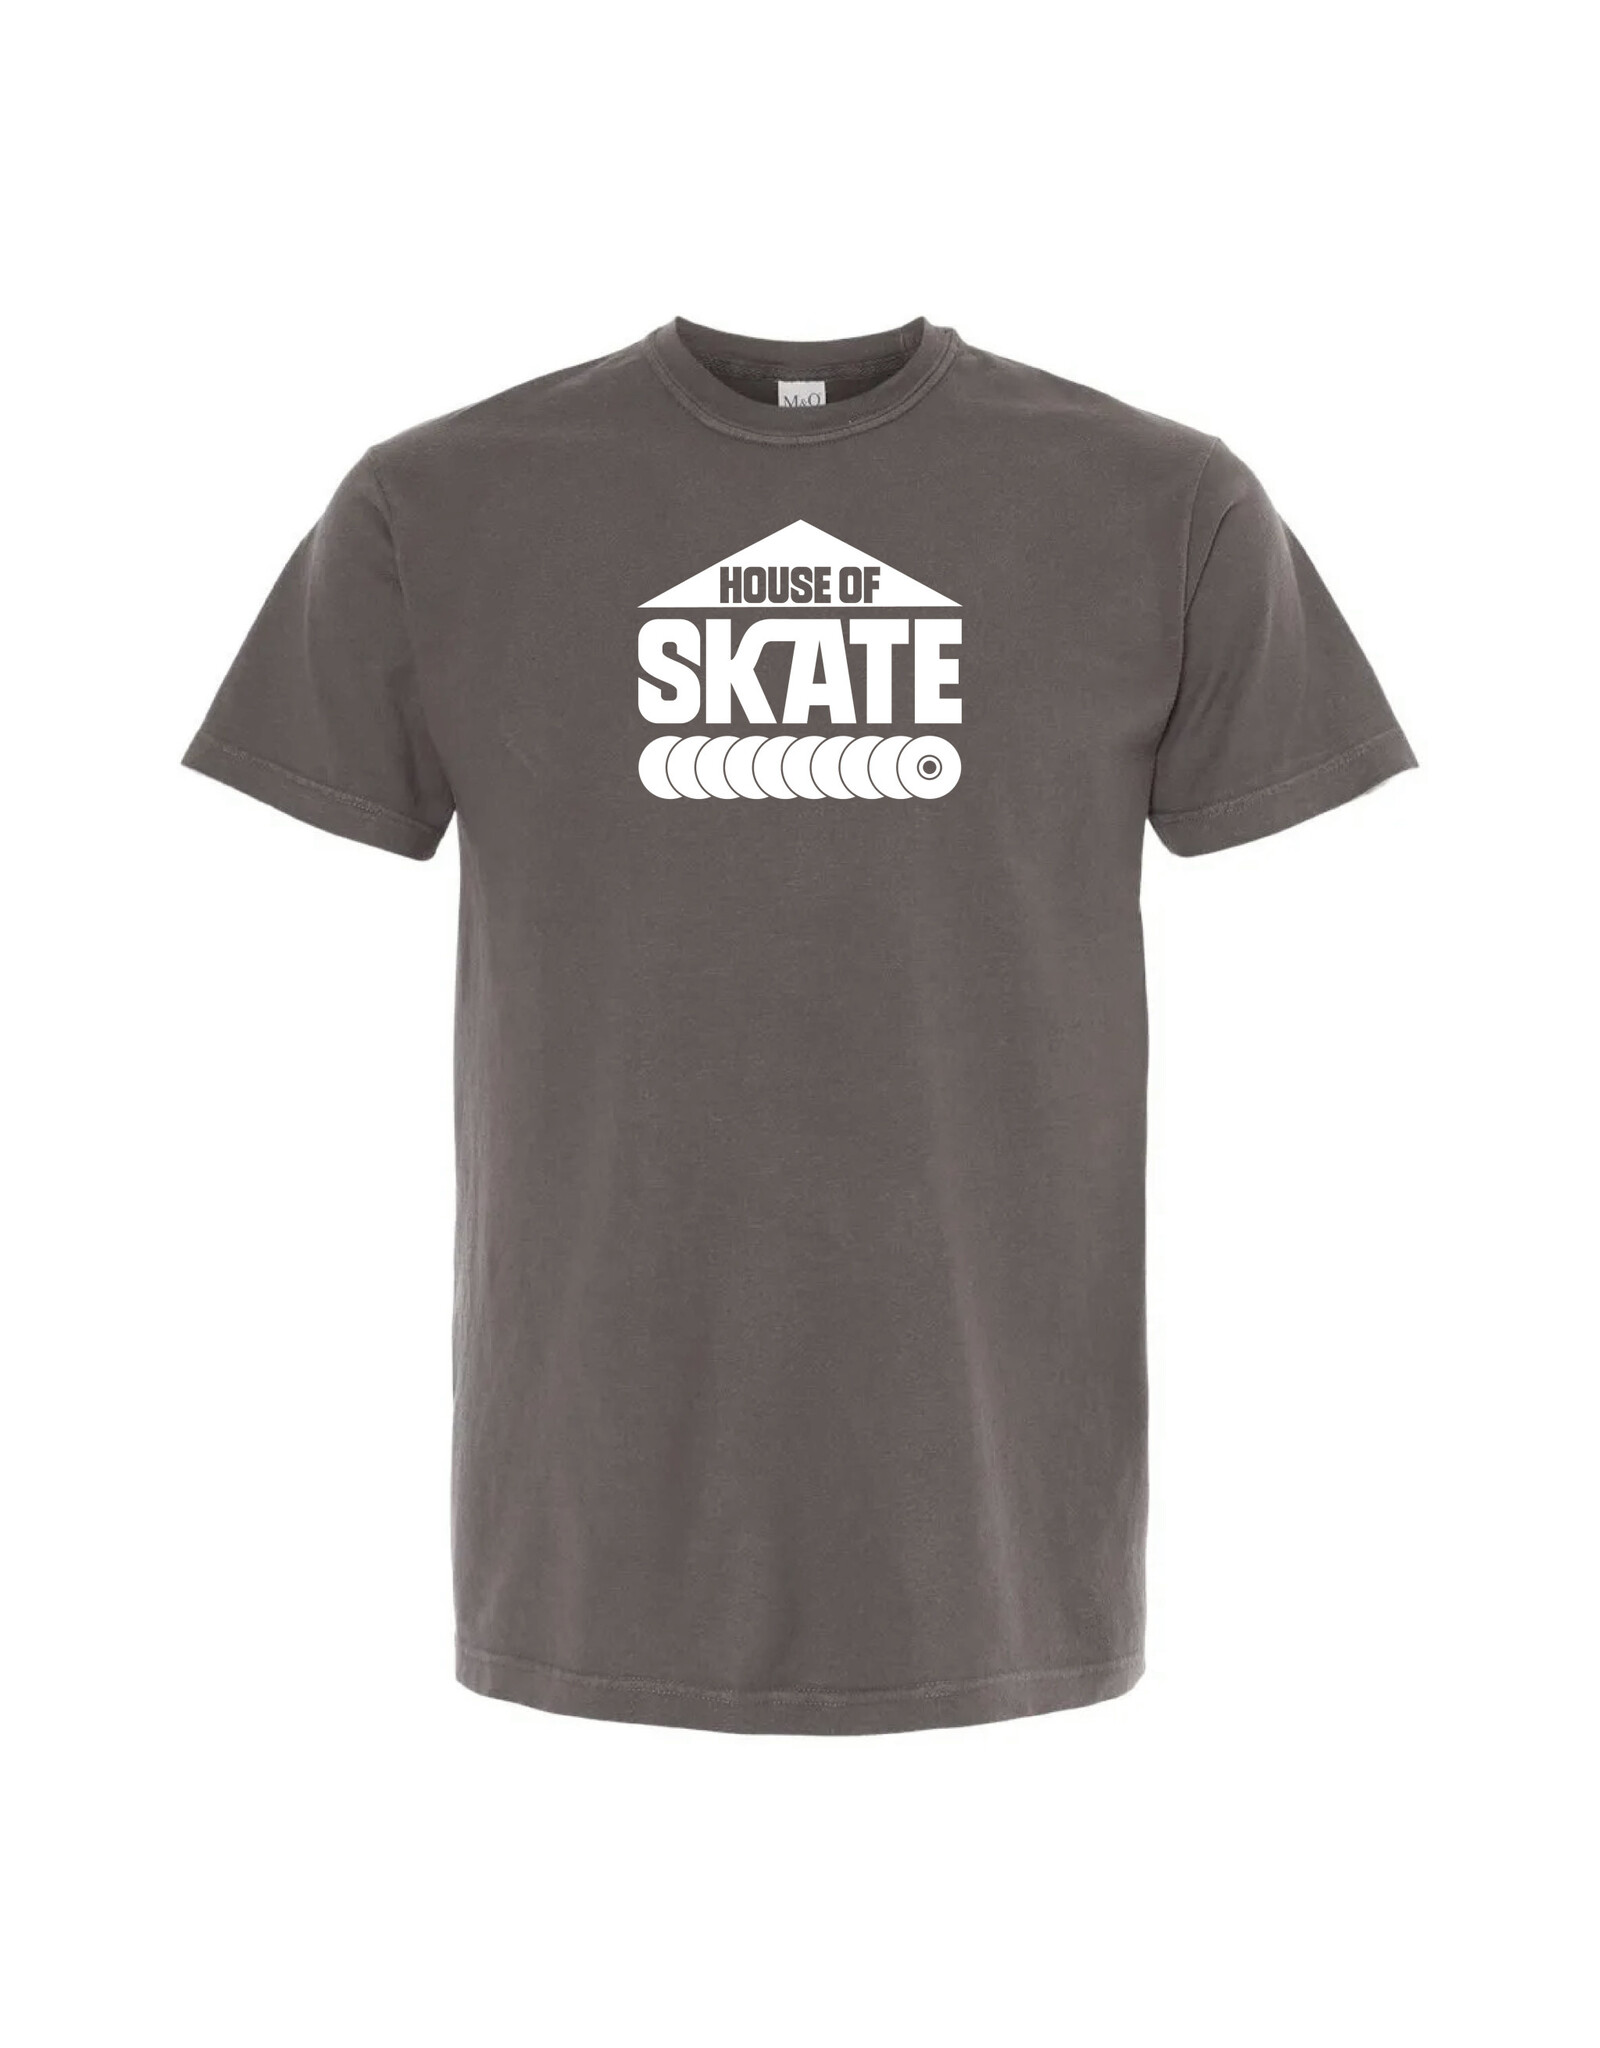 House of Skate Vintage Dye Unisex T-shirt